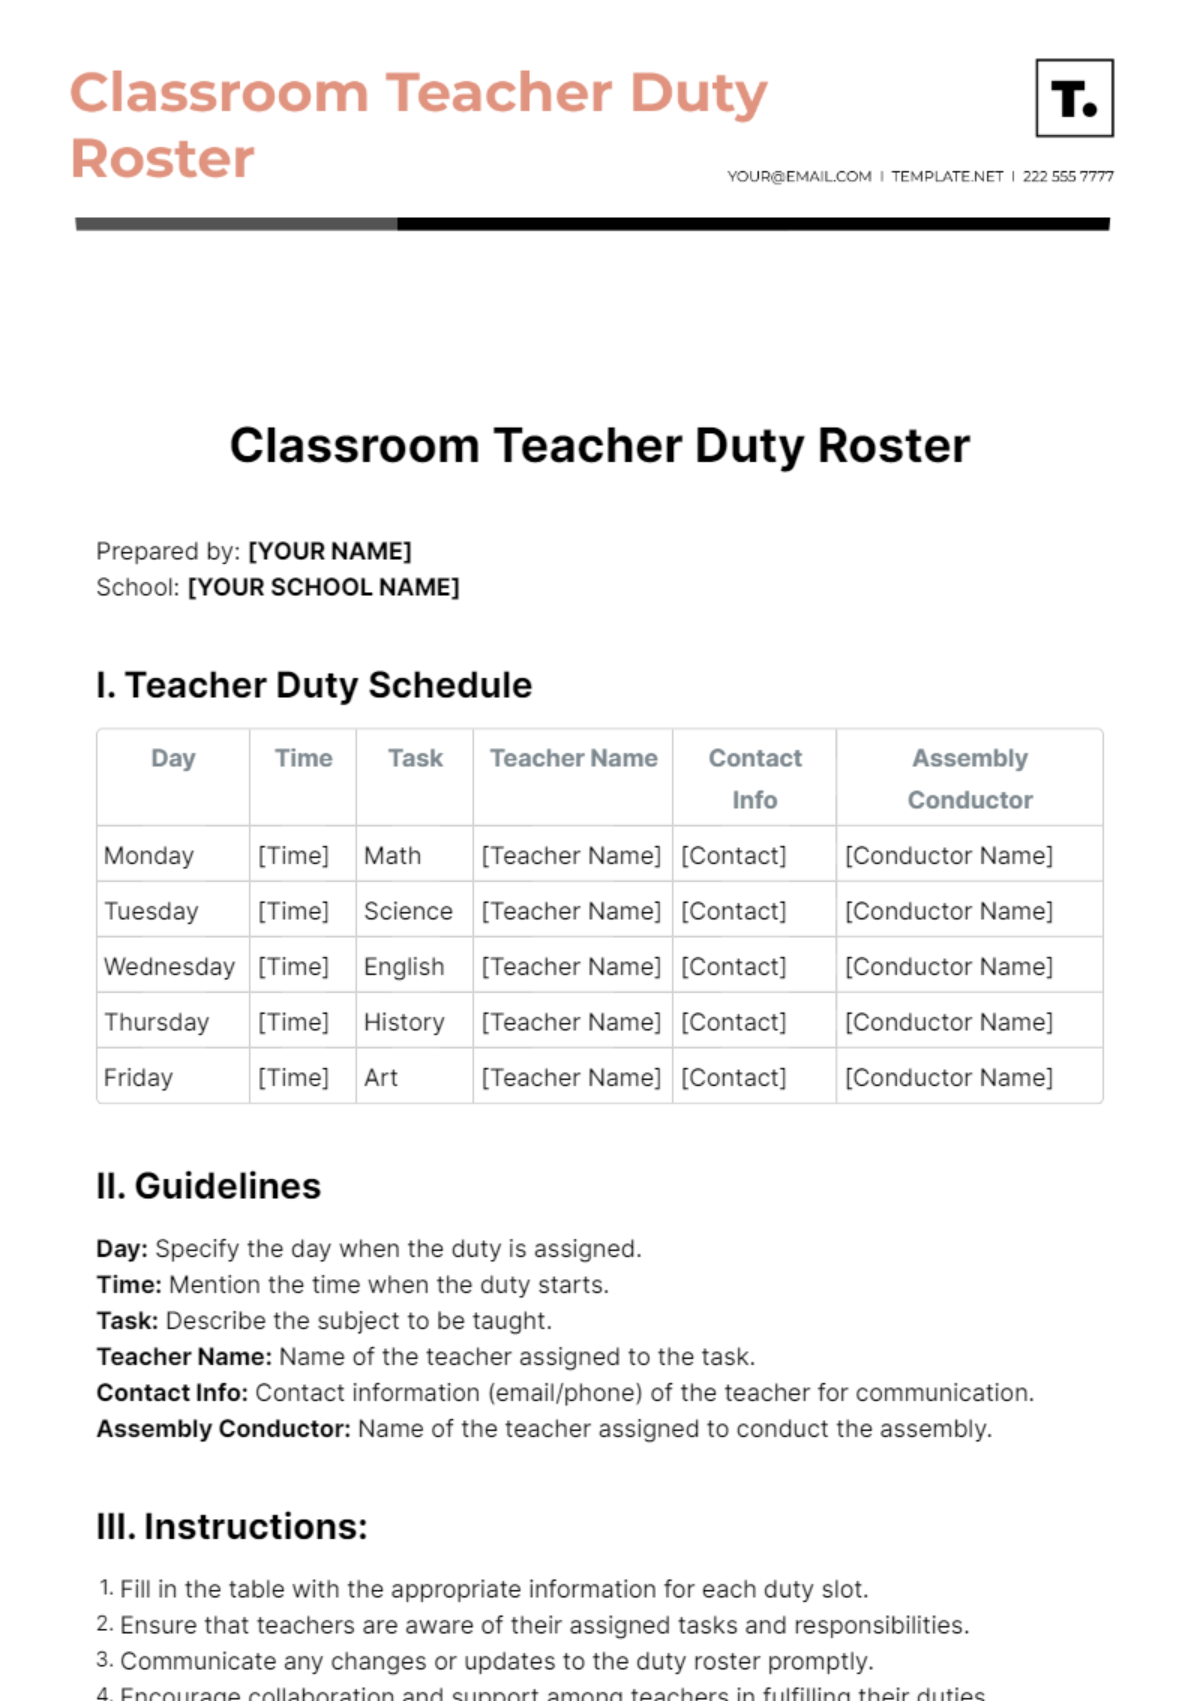 Classroom Teacher Duty Roster Template